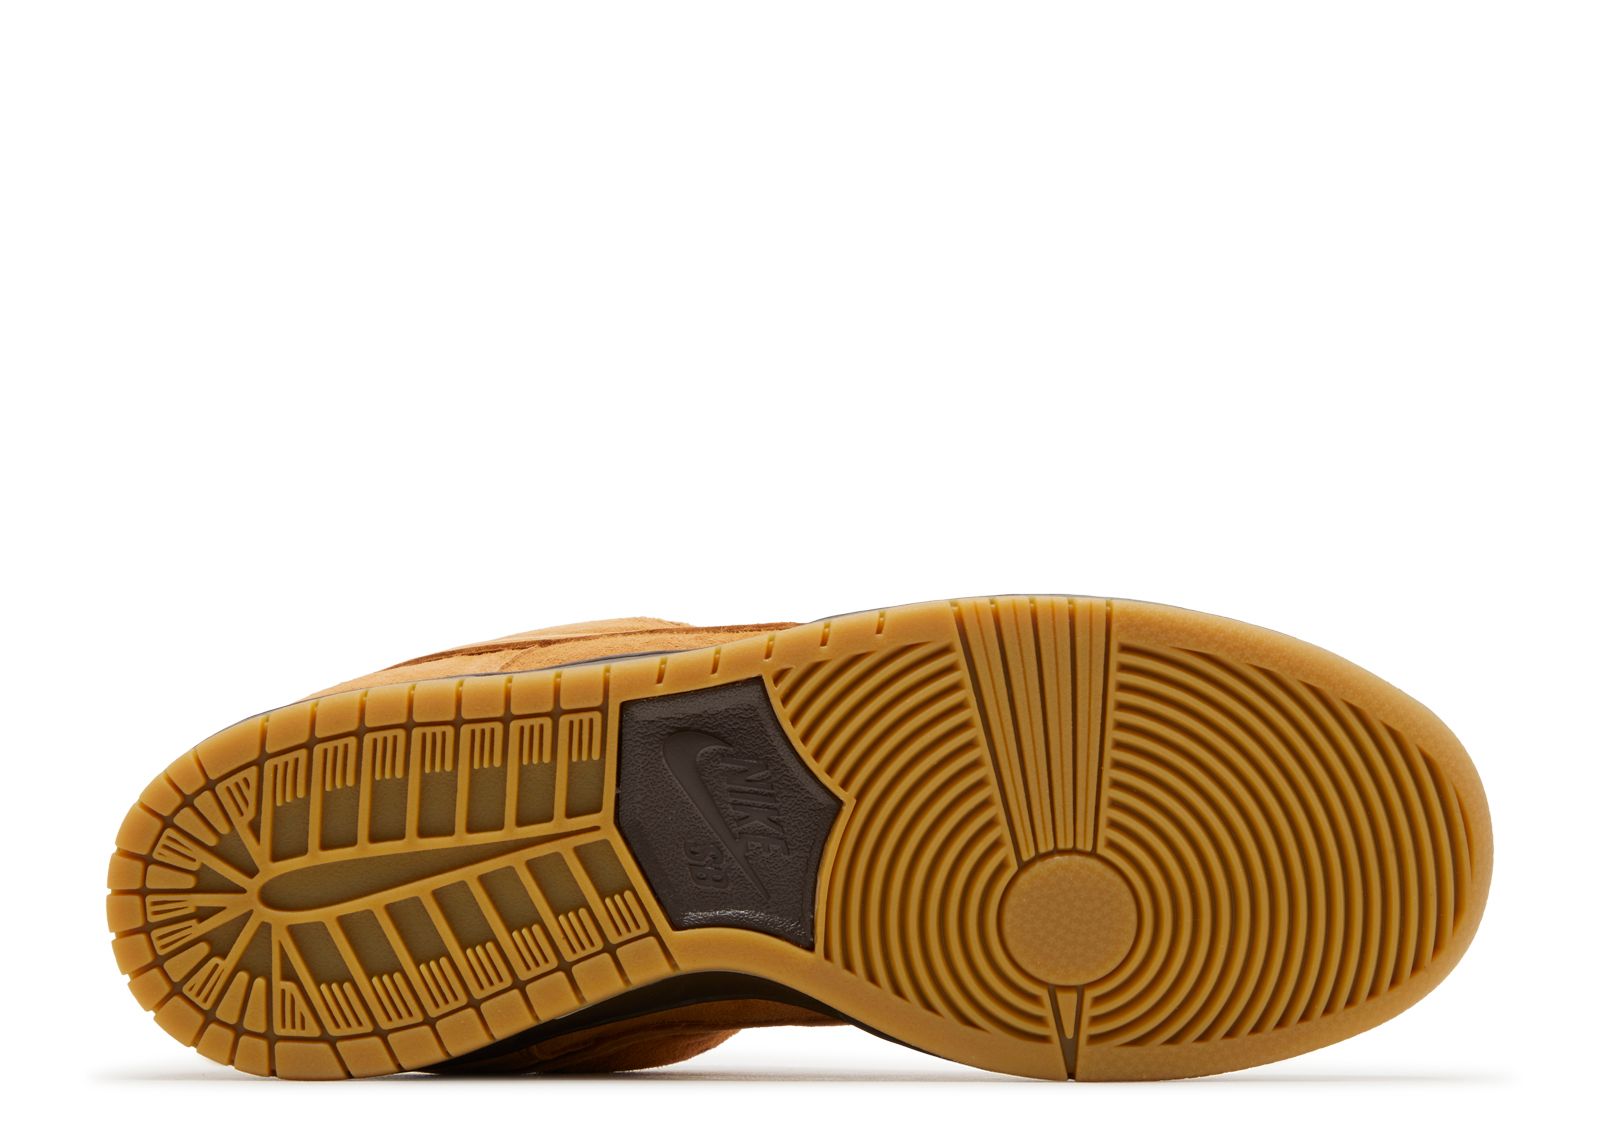 Dunk Low Pro SB 'Wheat Mocha' - Nike - BQ6817 204 - flax/flax/baroque  brown/gum light brown | Flight Club